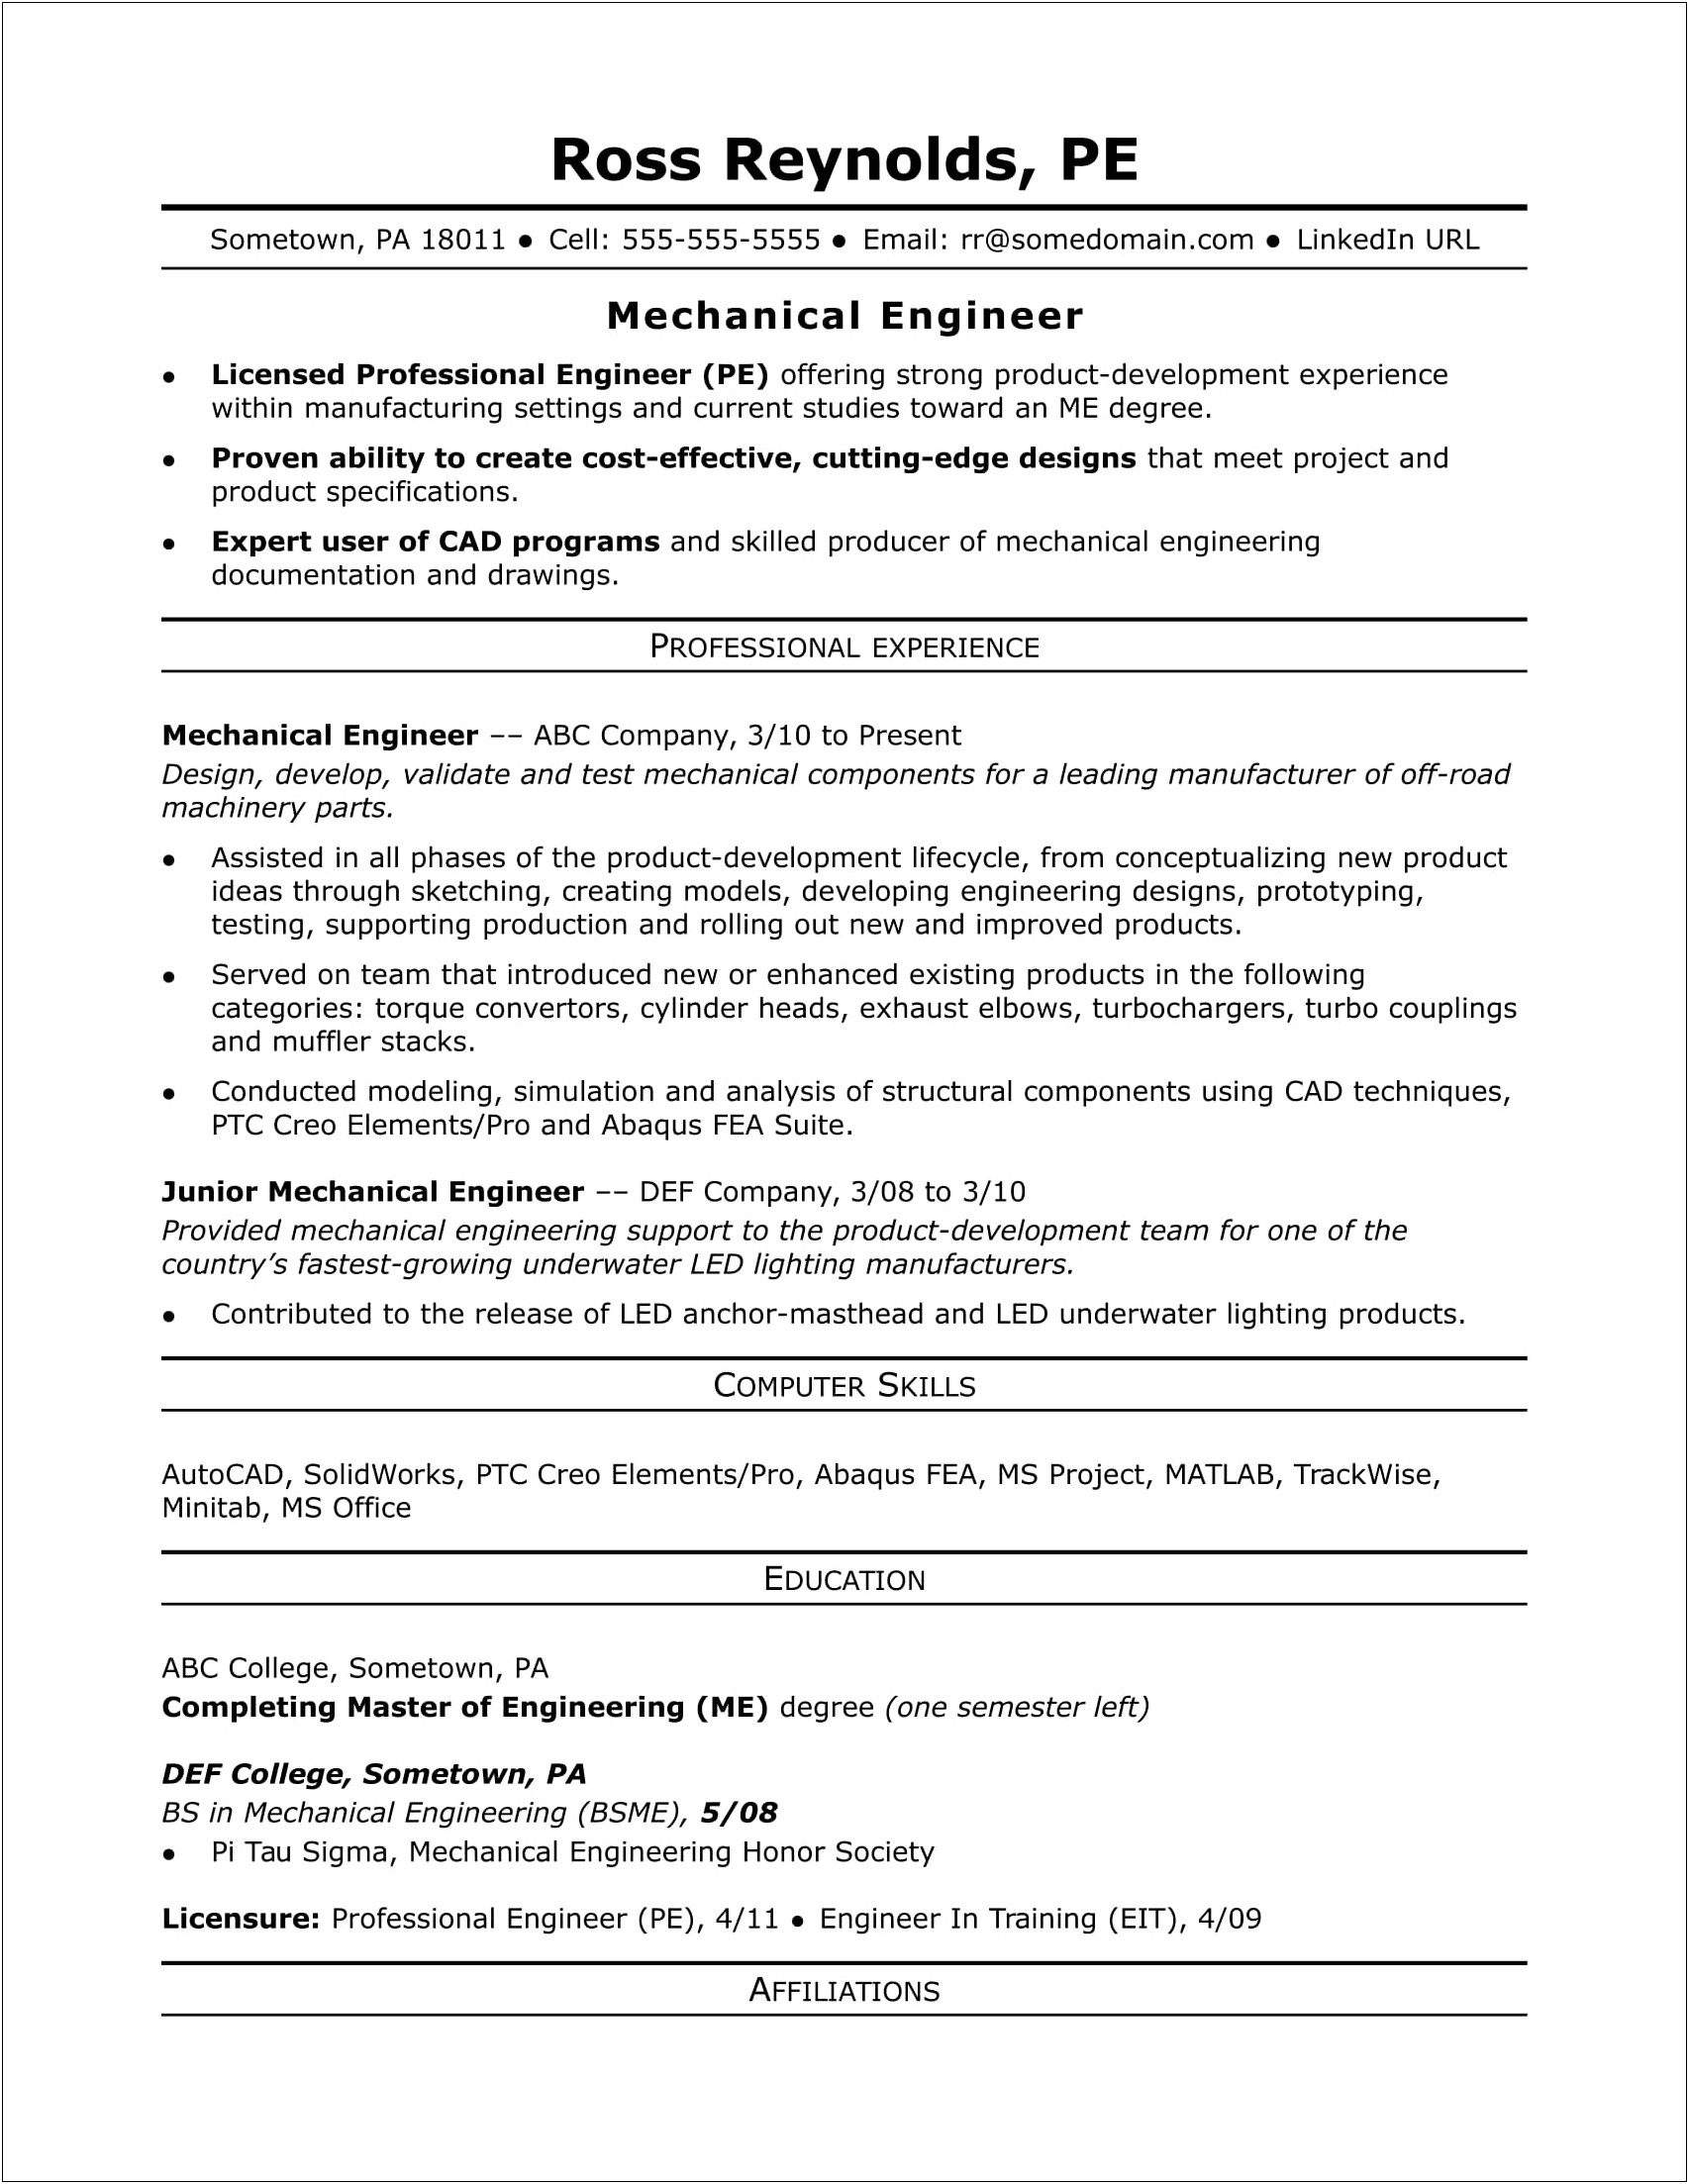 Sample Cover Letter For Resume Mechanical Engineer